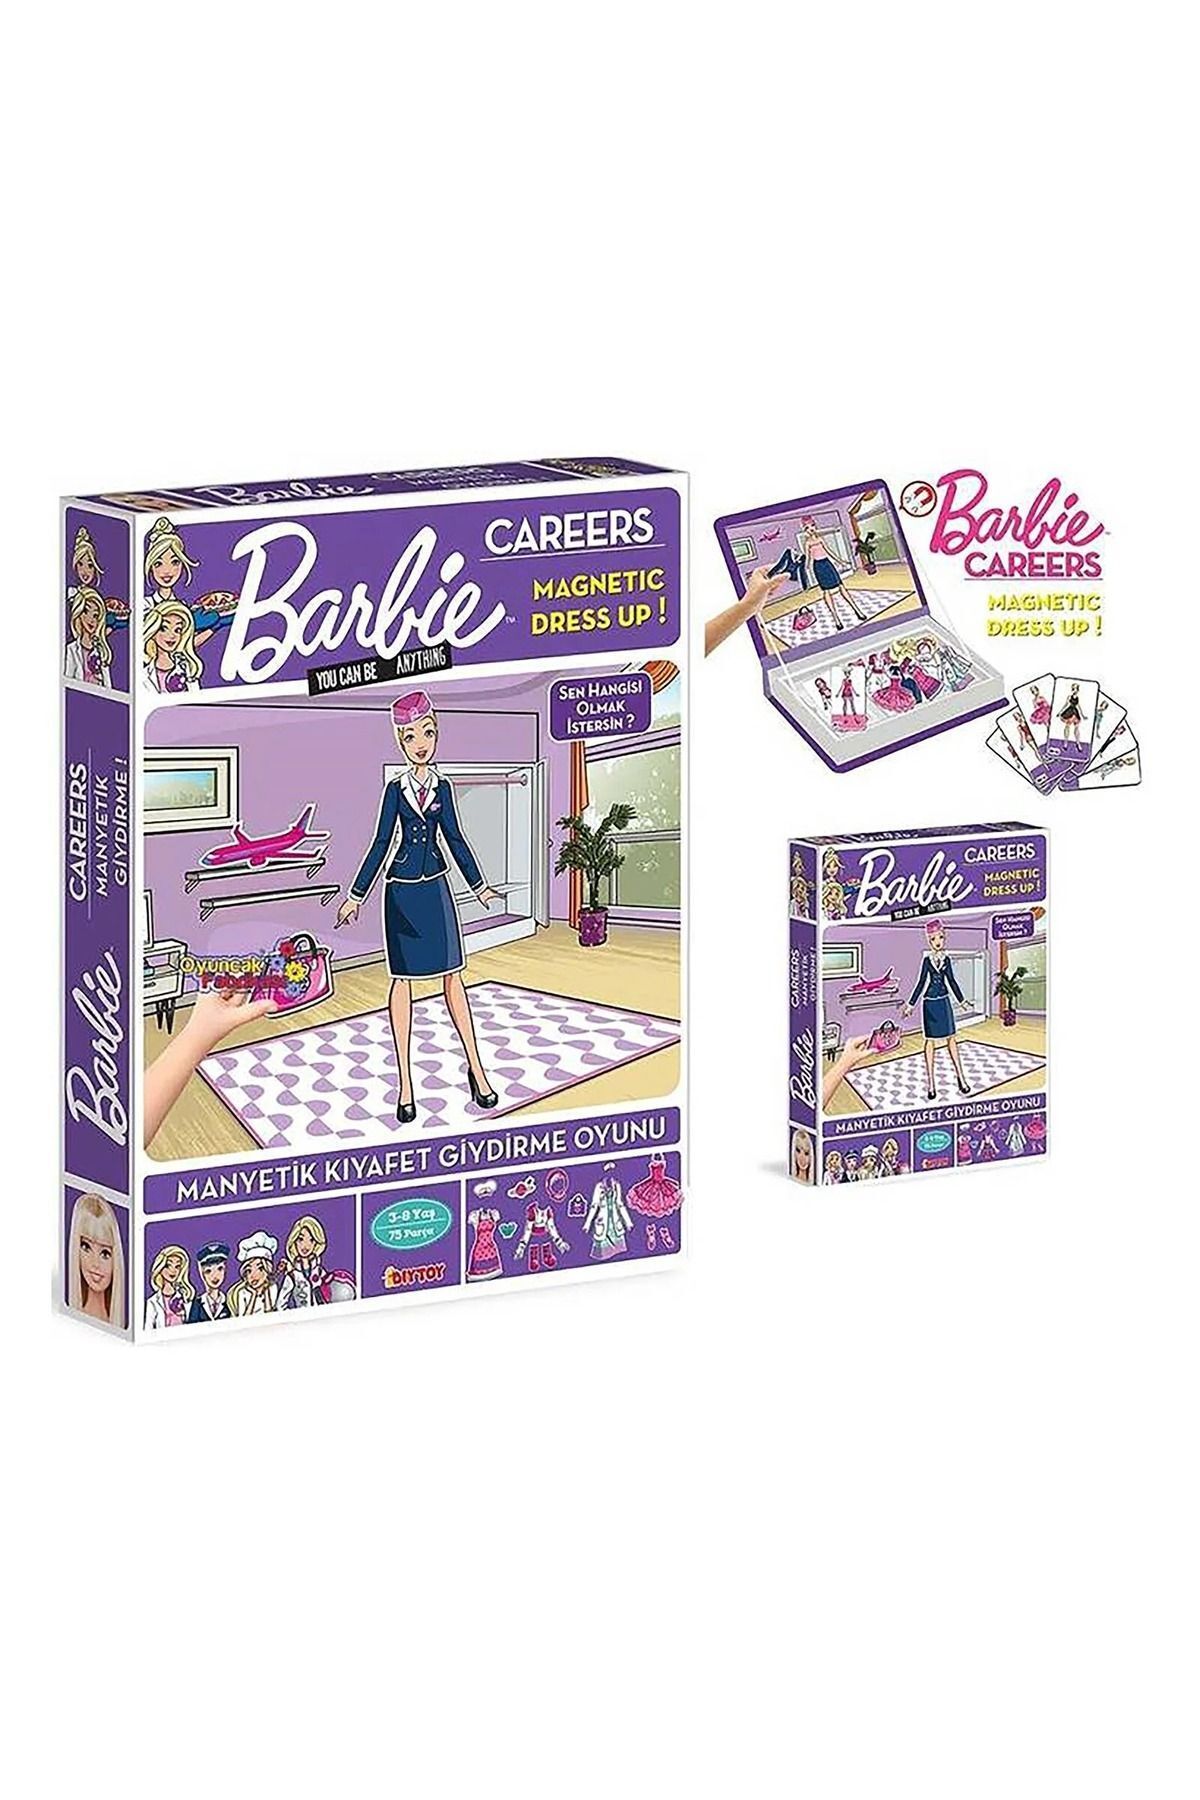 Barbie DIYTOY BARBIE KARİYER KIYAFETLERİ MANYETİK GİYDİRME